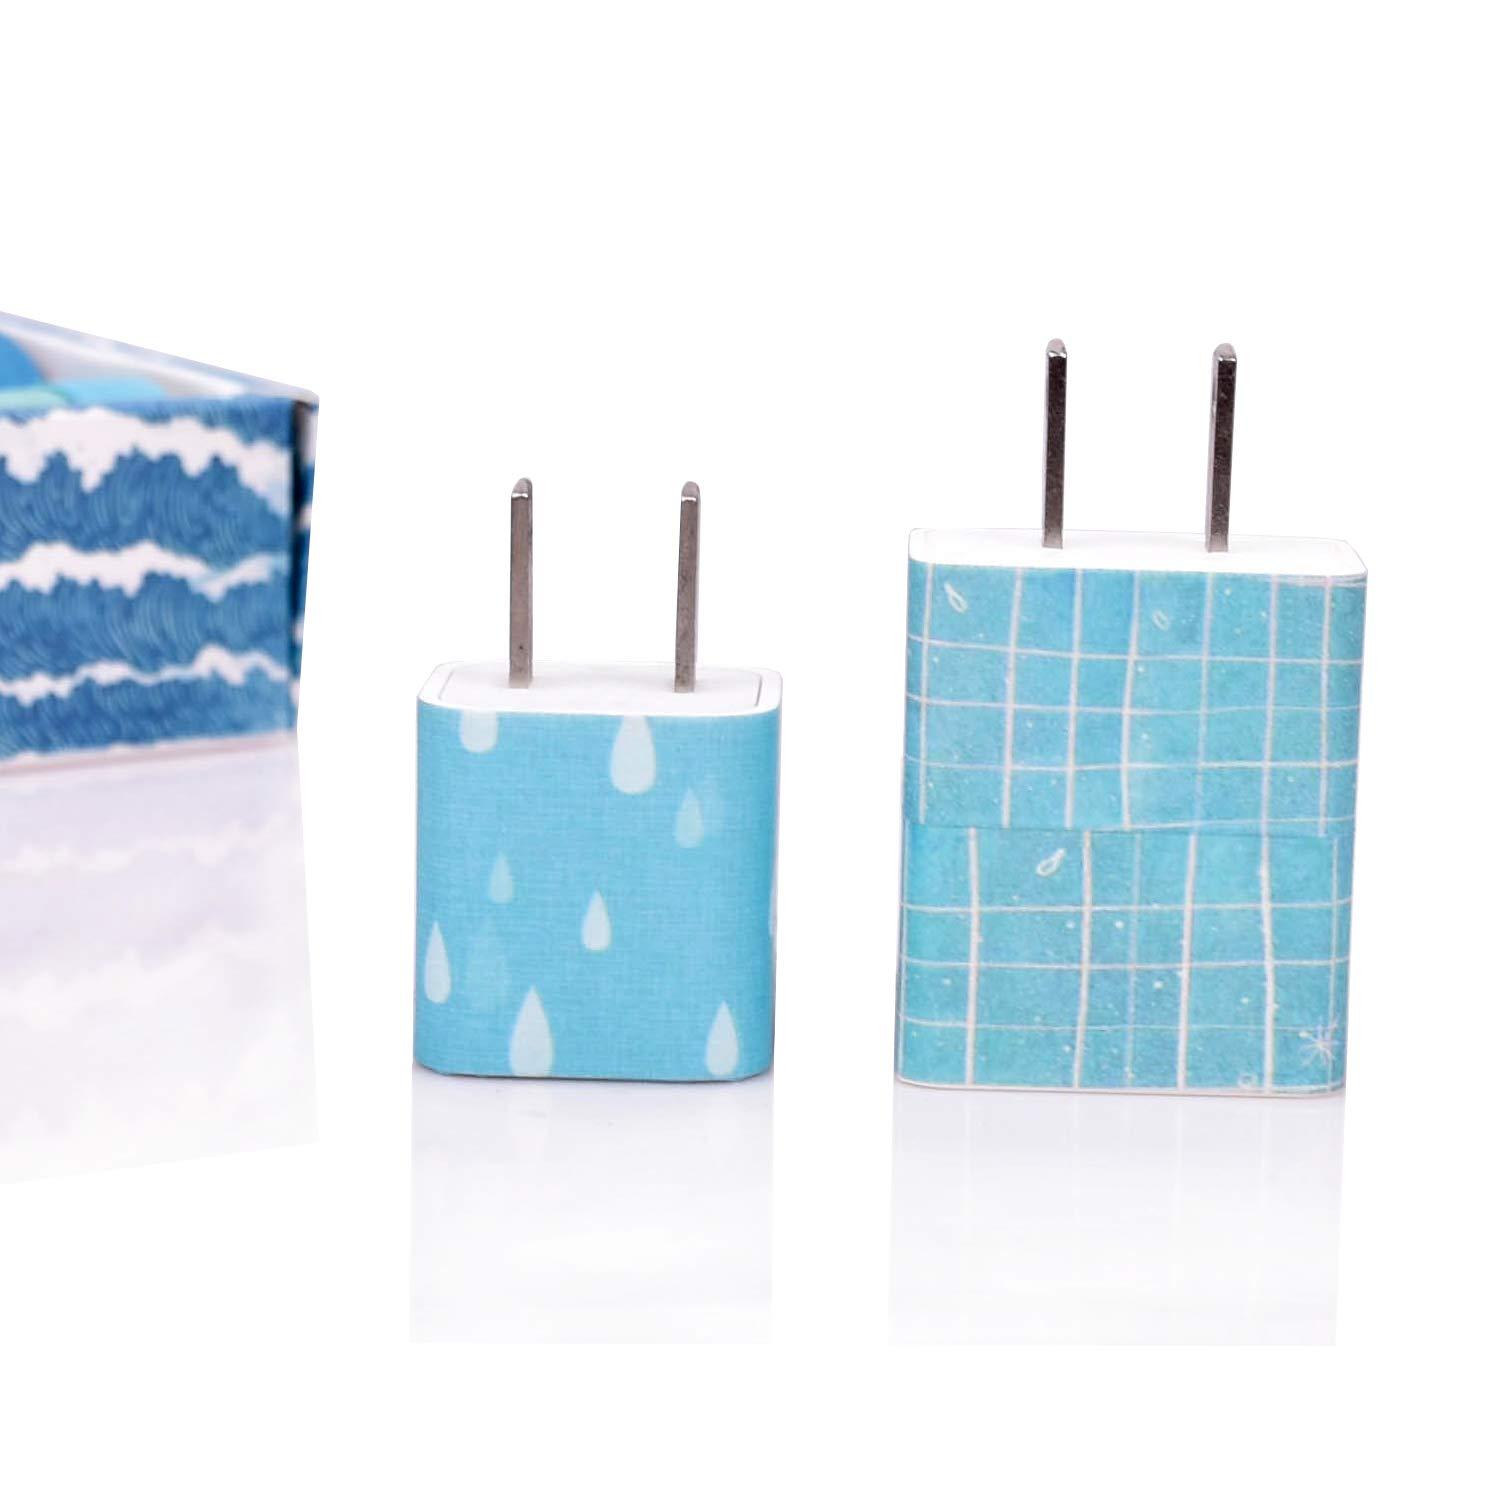 12 Rolls Washi Tape Set Japanese Decorative Blue Sea Wave Washi